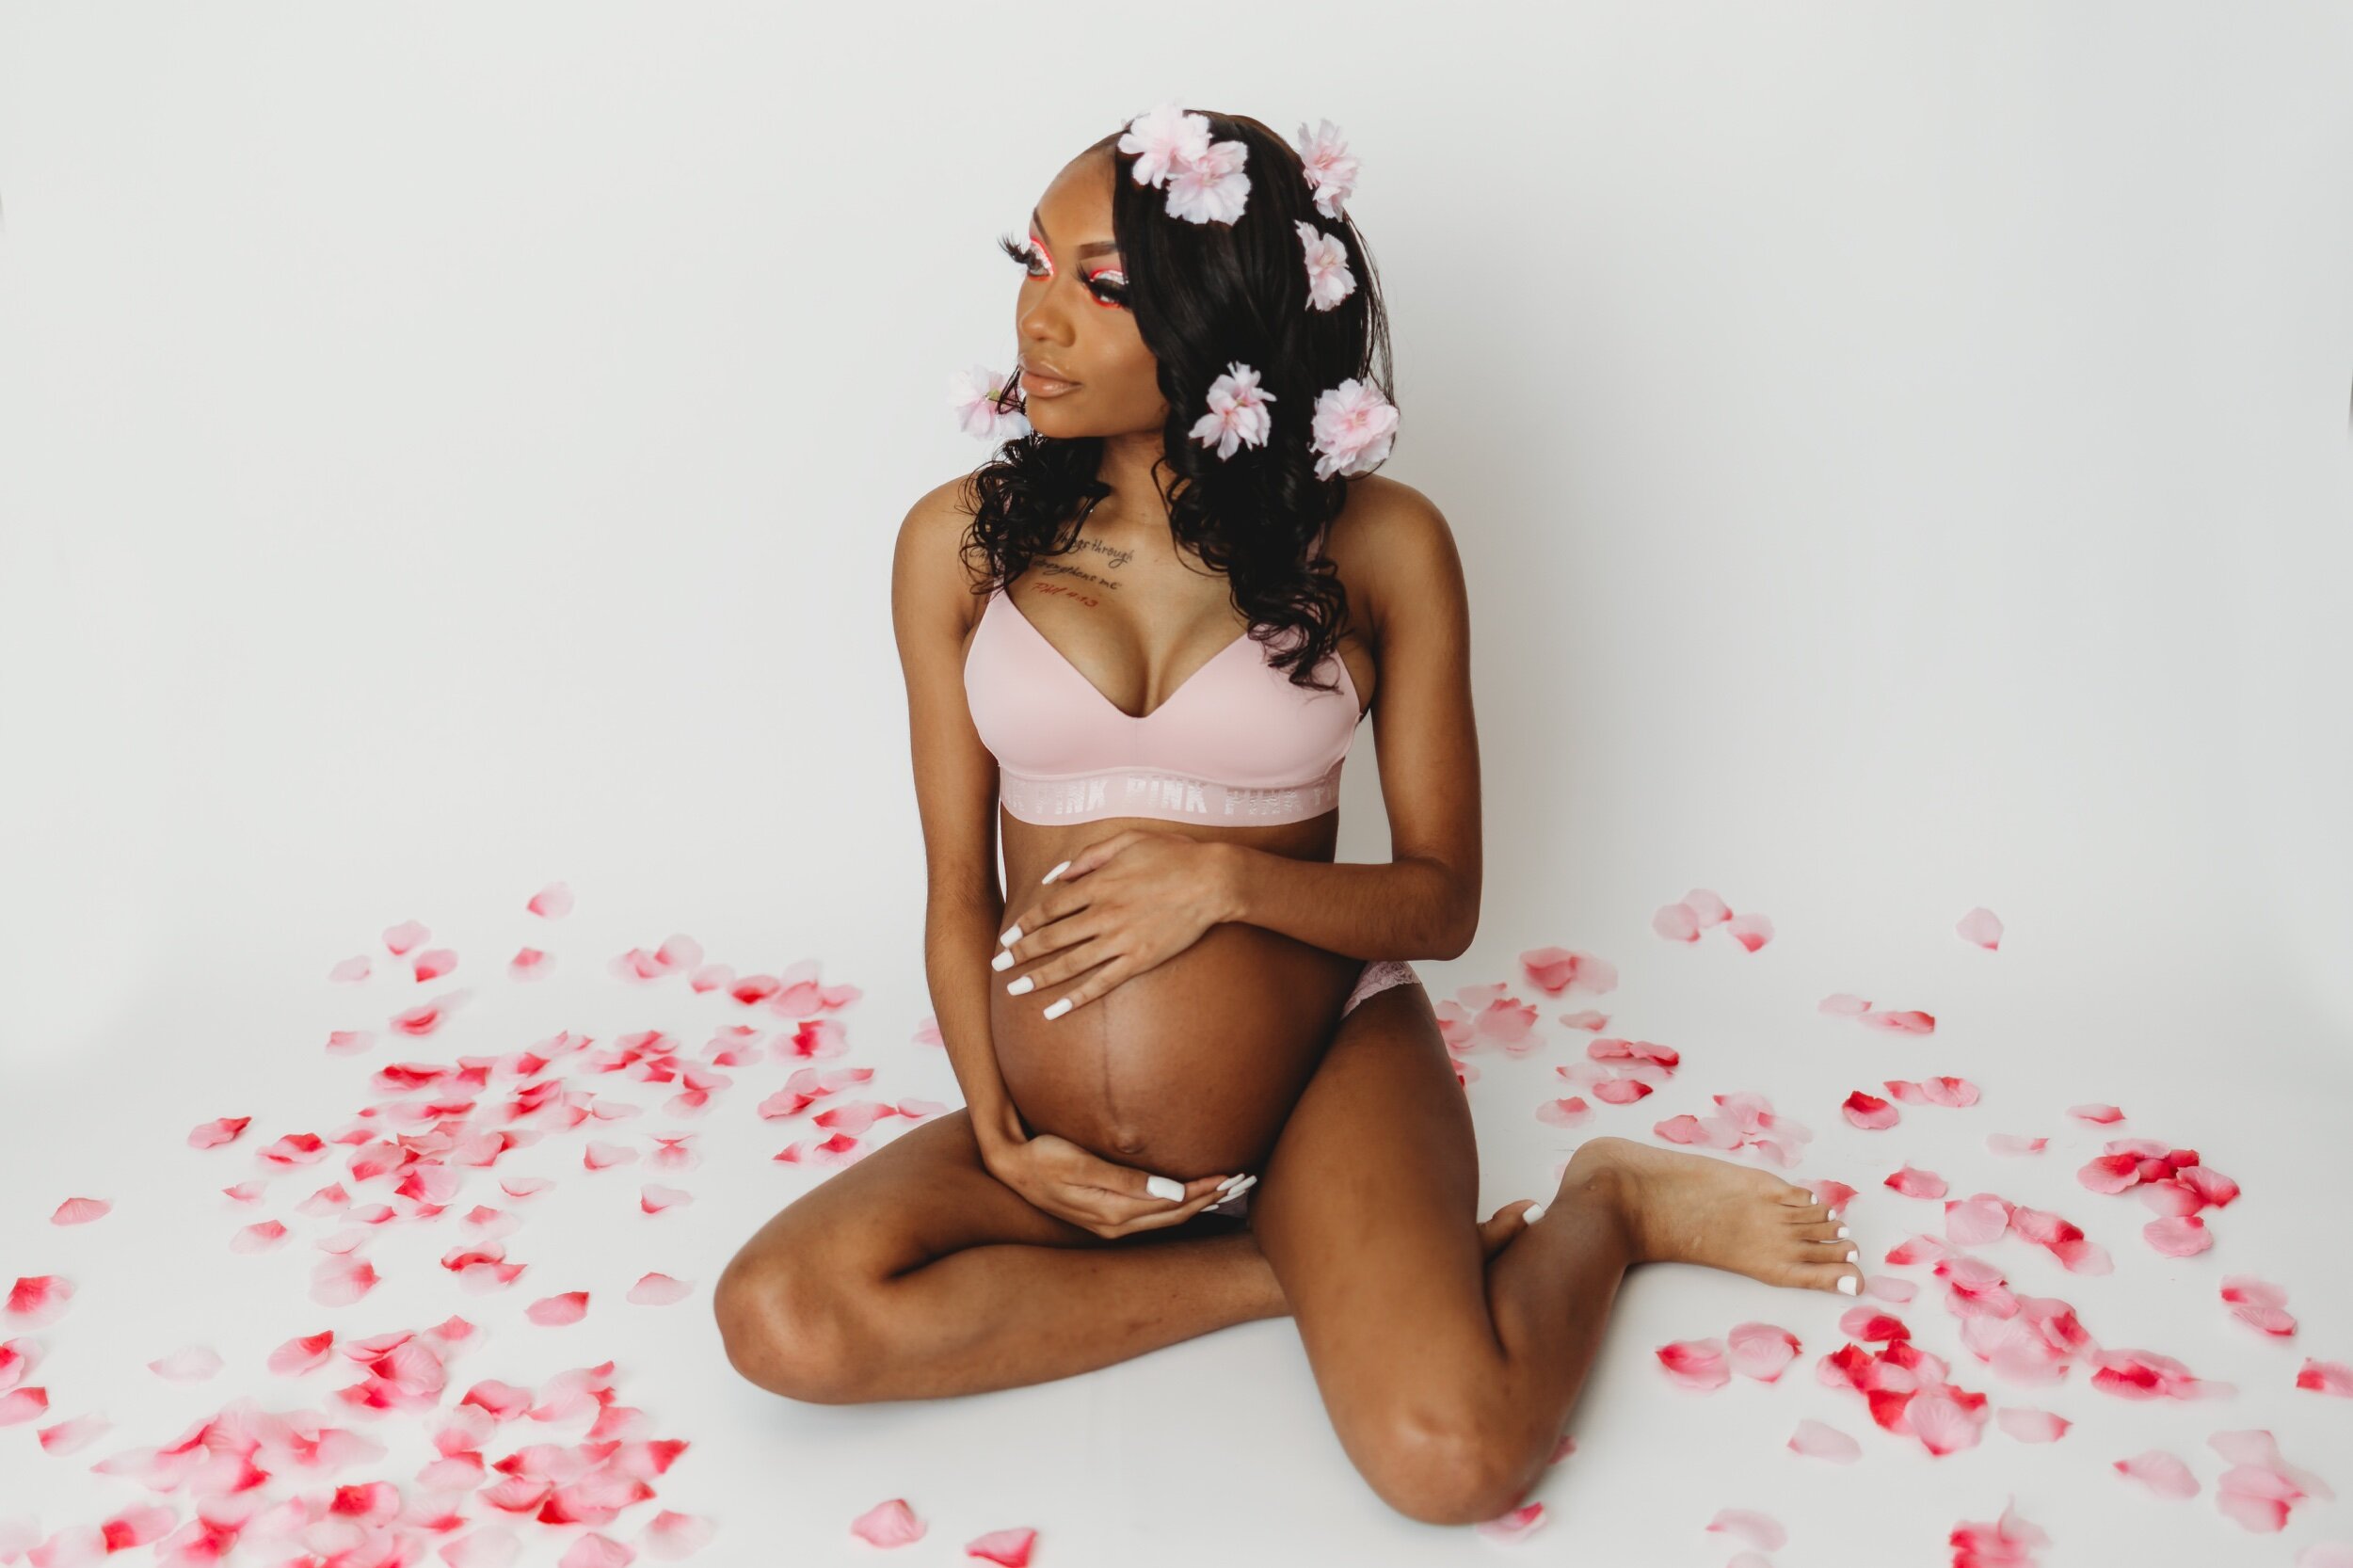 Maternity Goddess — Brooke Berenyi Photography